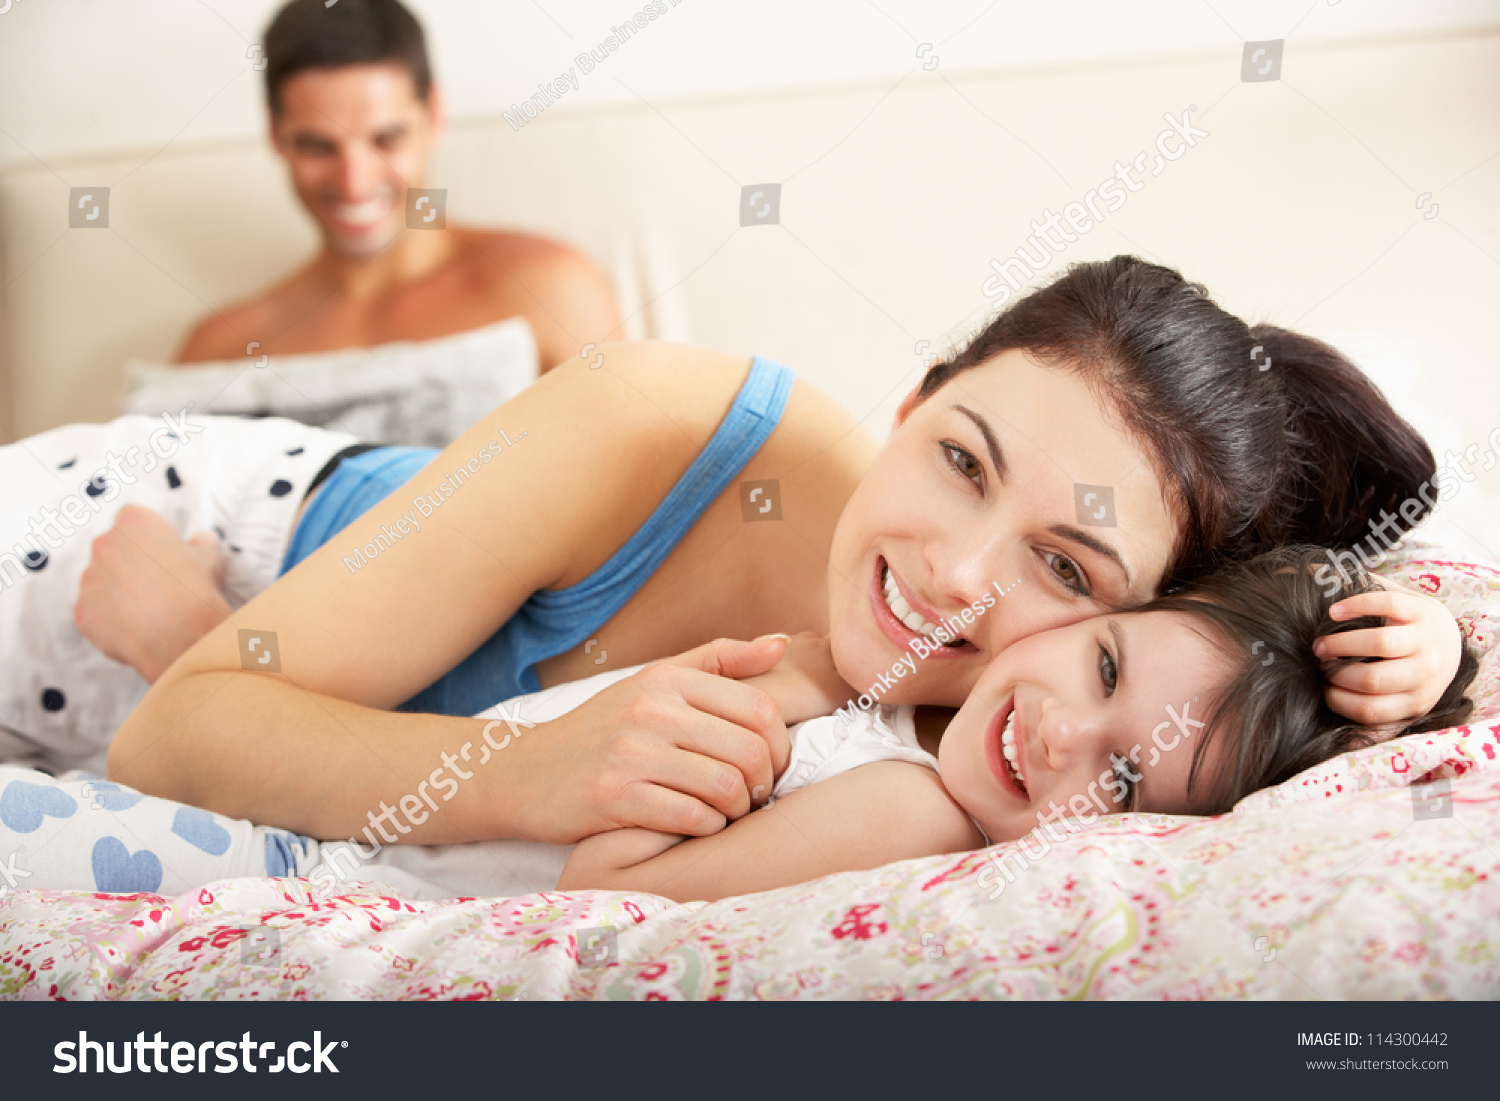 С ее мамой в постели. Мамас дочкой накрлвати. Мама с дочкой на кровати. Фотосессия дочь и мама взрослые в кровати. Фото мама с дочкой в постели.